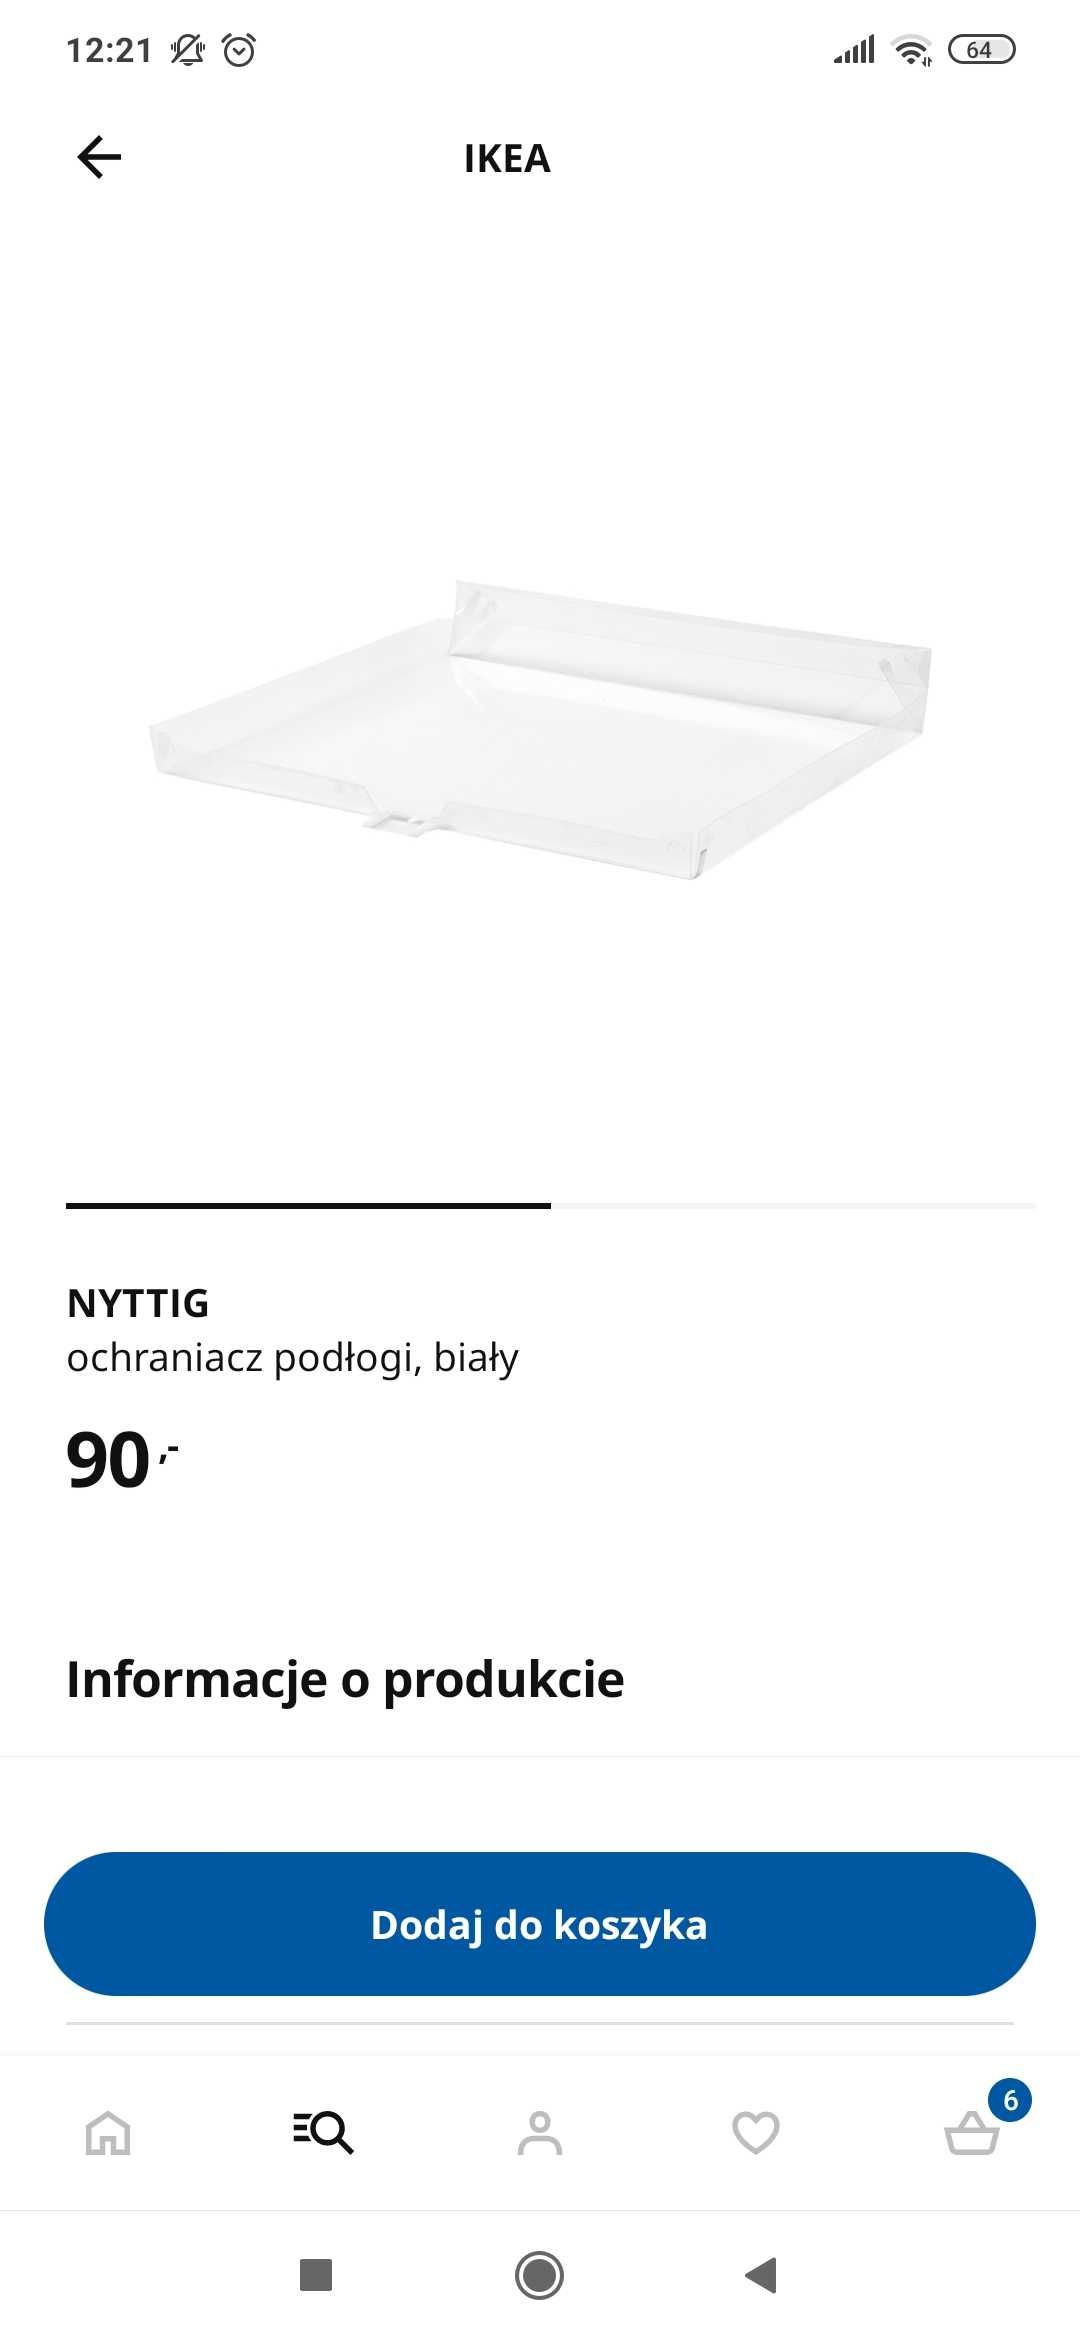 Ochraniacz podłogi Nyttig IKEA